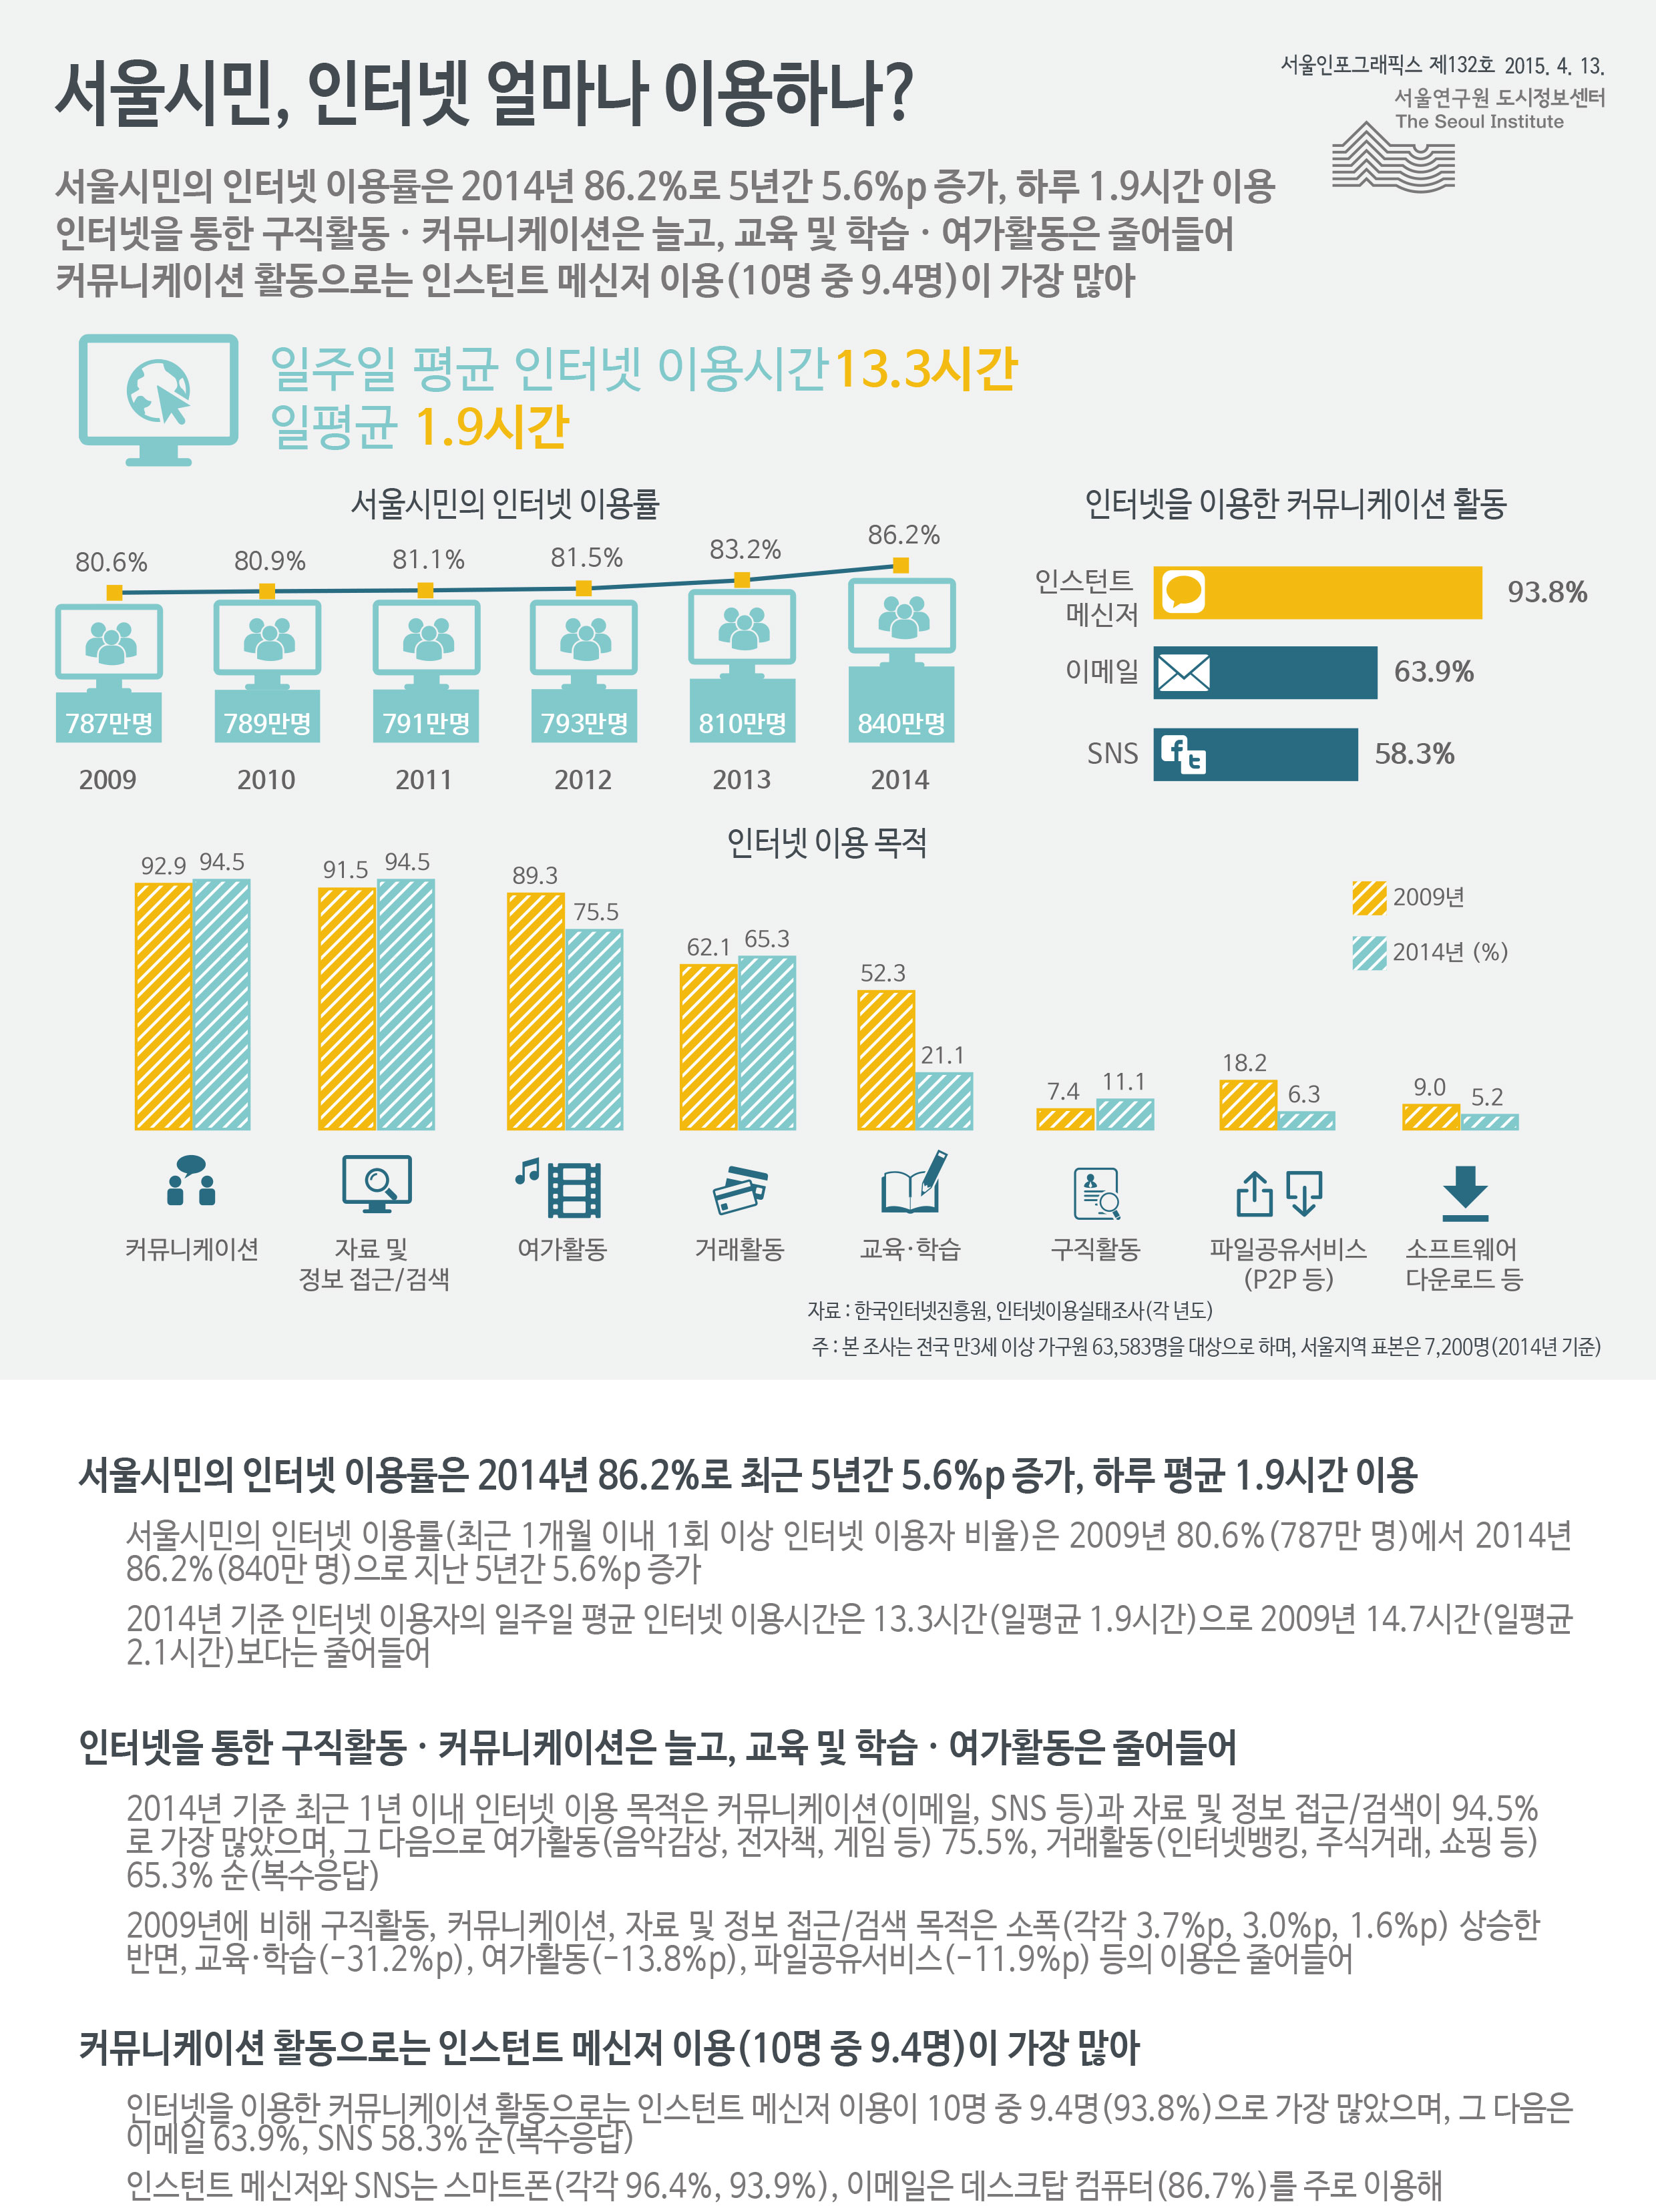 서울시민, 인터넷 얼마나 이용하나? 서울인포그래픽스 제132호 2015년 4월 13일 서울시민의 인터넷 이용률은 2014년 86.2%로 최근 5년간 5.6%p 증가, 하루 평균 1.9시간 이용. 인터넷을 통한 구직활동 및 커뮤니케이션은 늘고, 교육 및 학습, 여가활동은 줄어듦. 커뮤니케이션 활동으로는 인스턴트 메신저 이용이 10명 중 9.4명으로 가장 많음으로 정리 될 수 있습니다. 인포그래픽으로 제공되는 그래픽은 하단에 표로 자세히 제공됩니다.